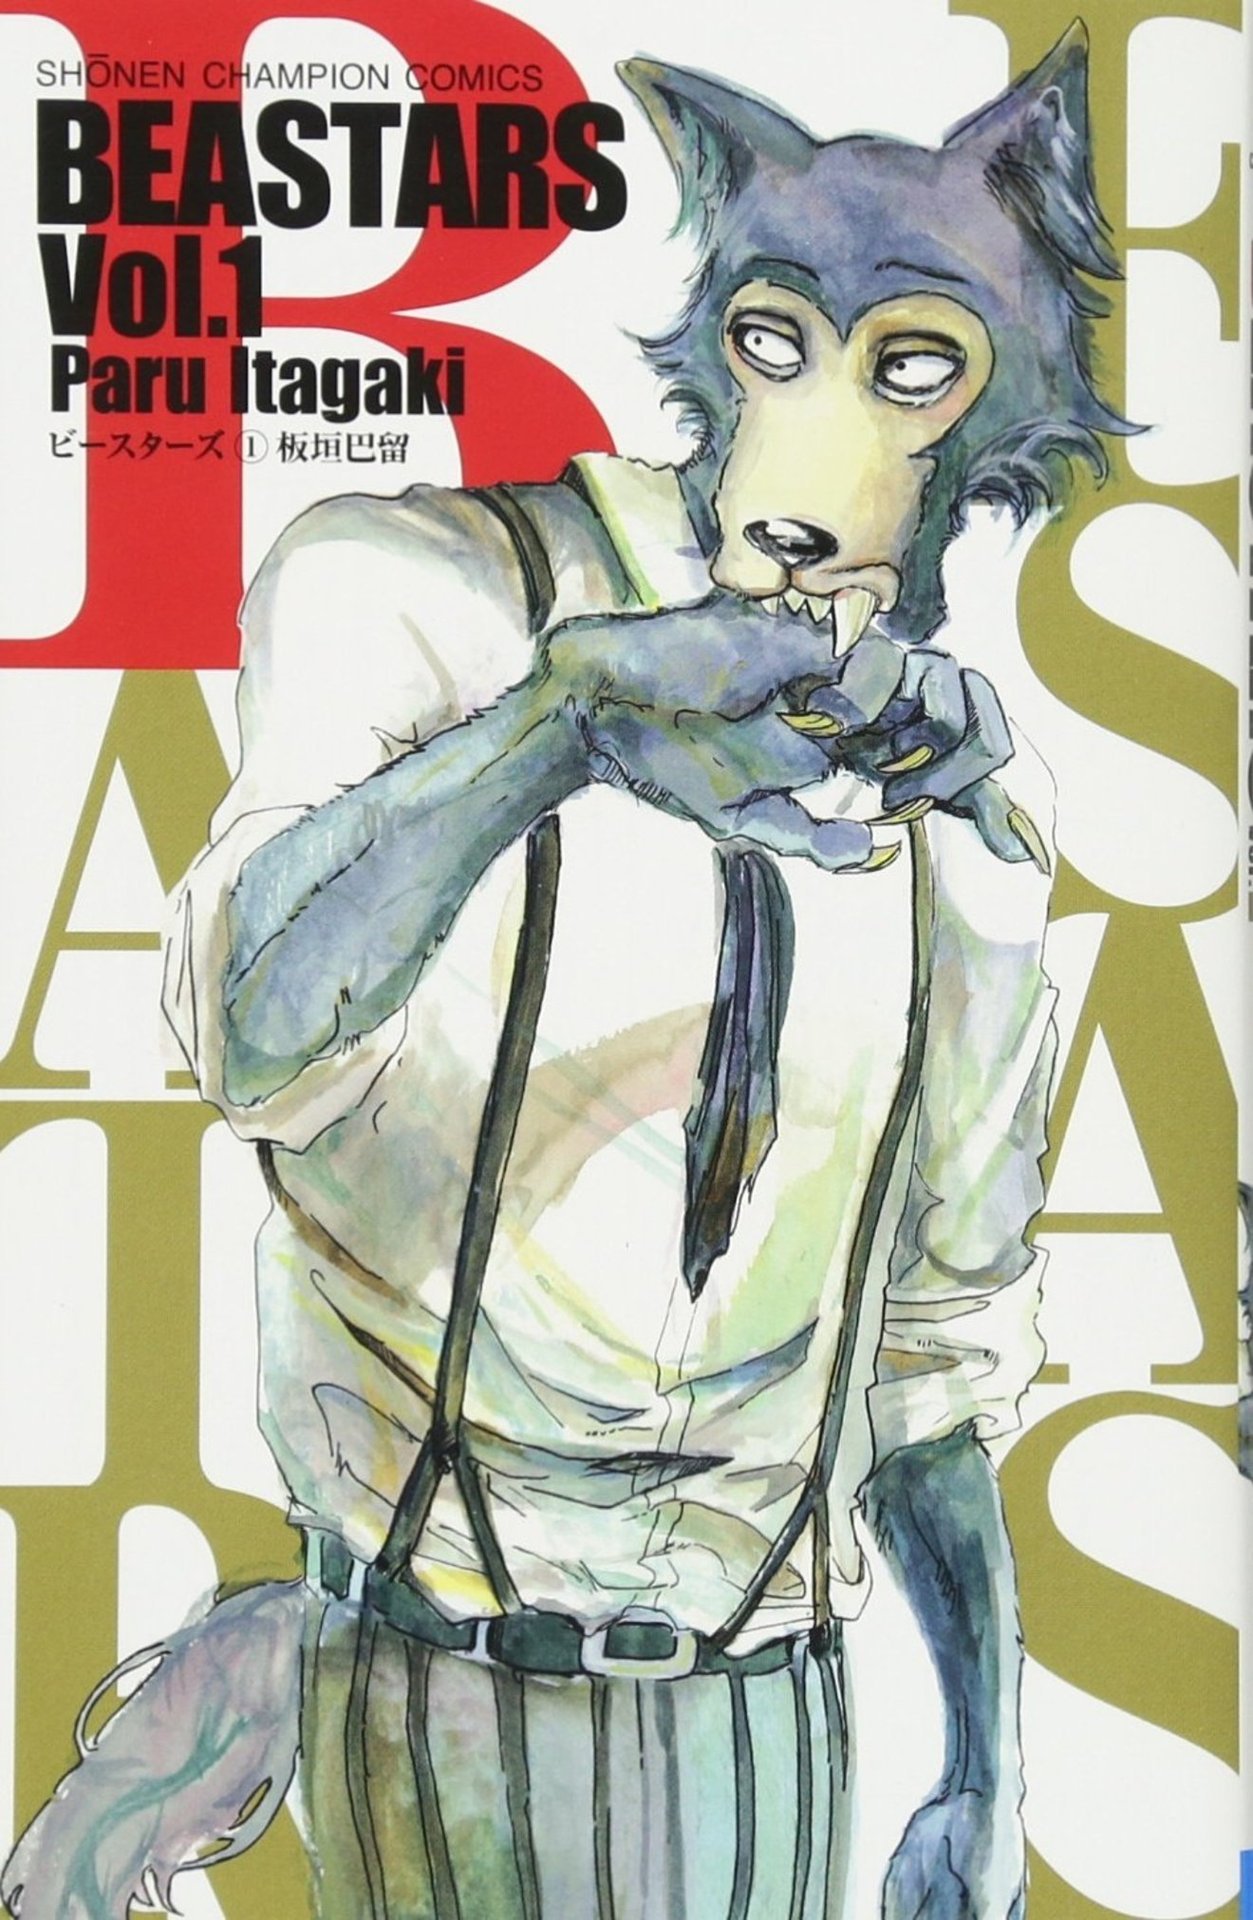 Paru Itagakiâs manga series âBEASTARSâ will have an important announcement in this yearâs Shounen Champion issue #10; on sale February 7th.